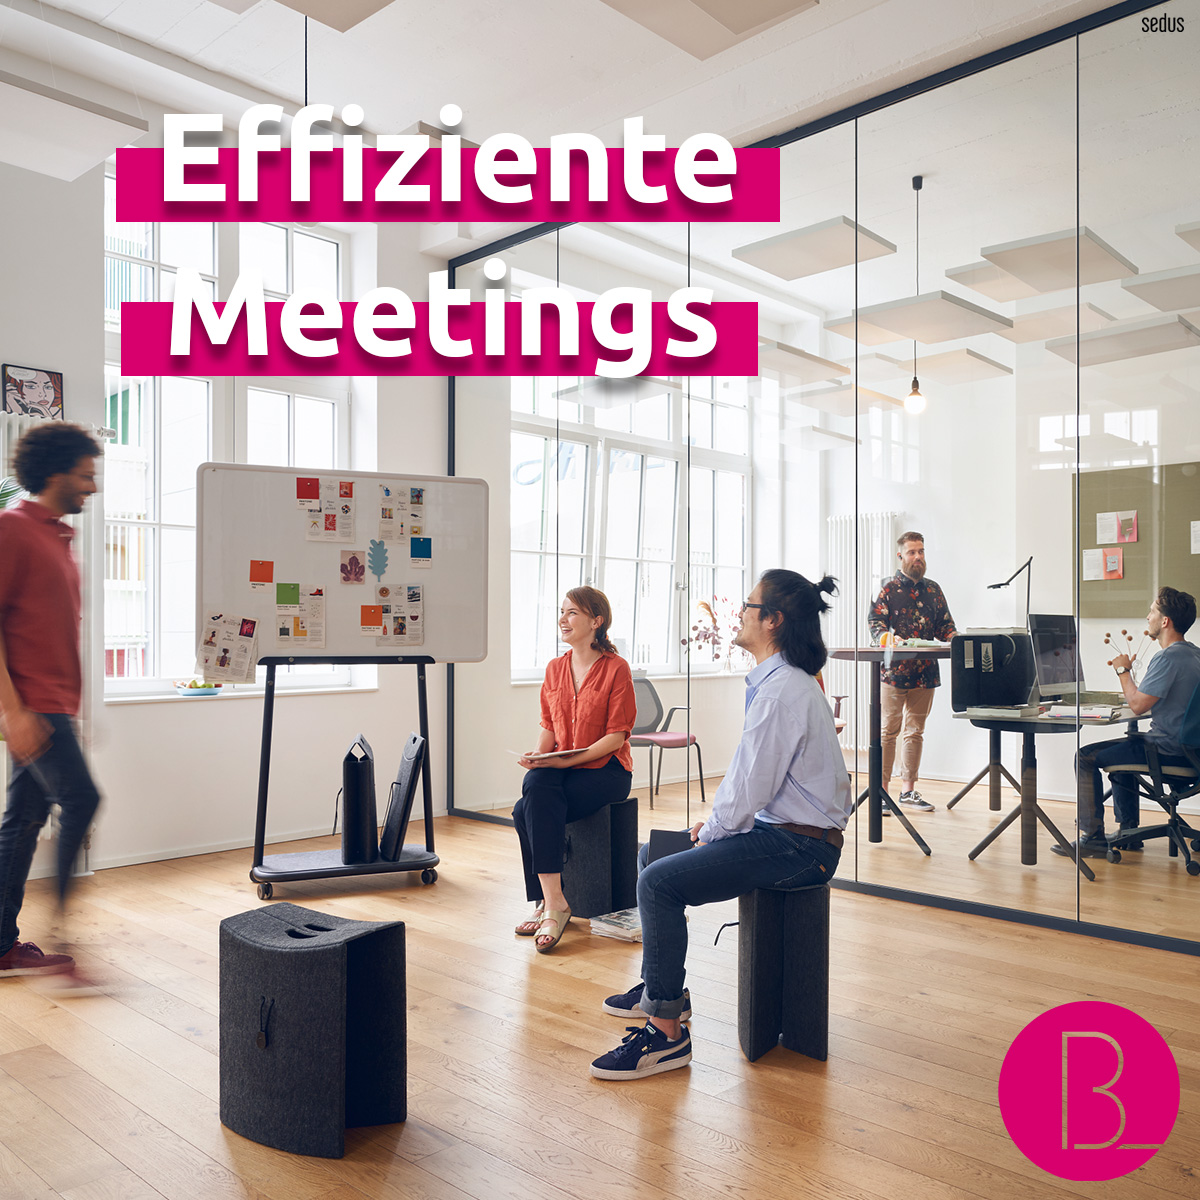 Produktive und effiziente Meetings